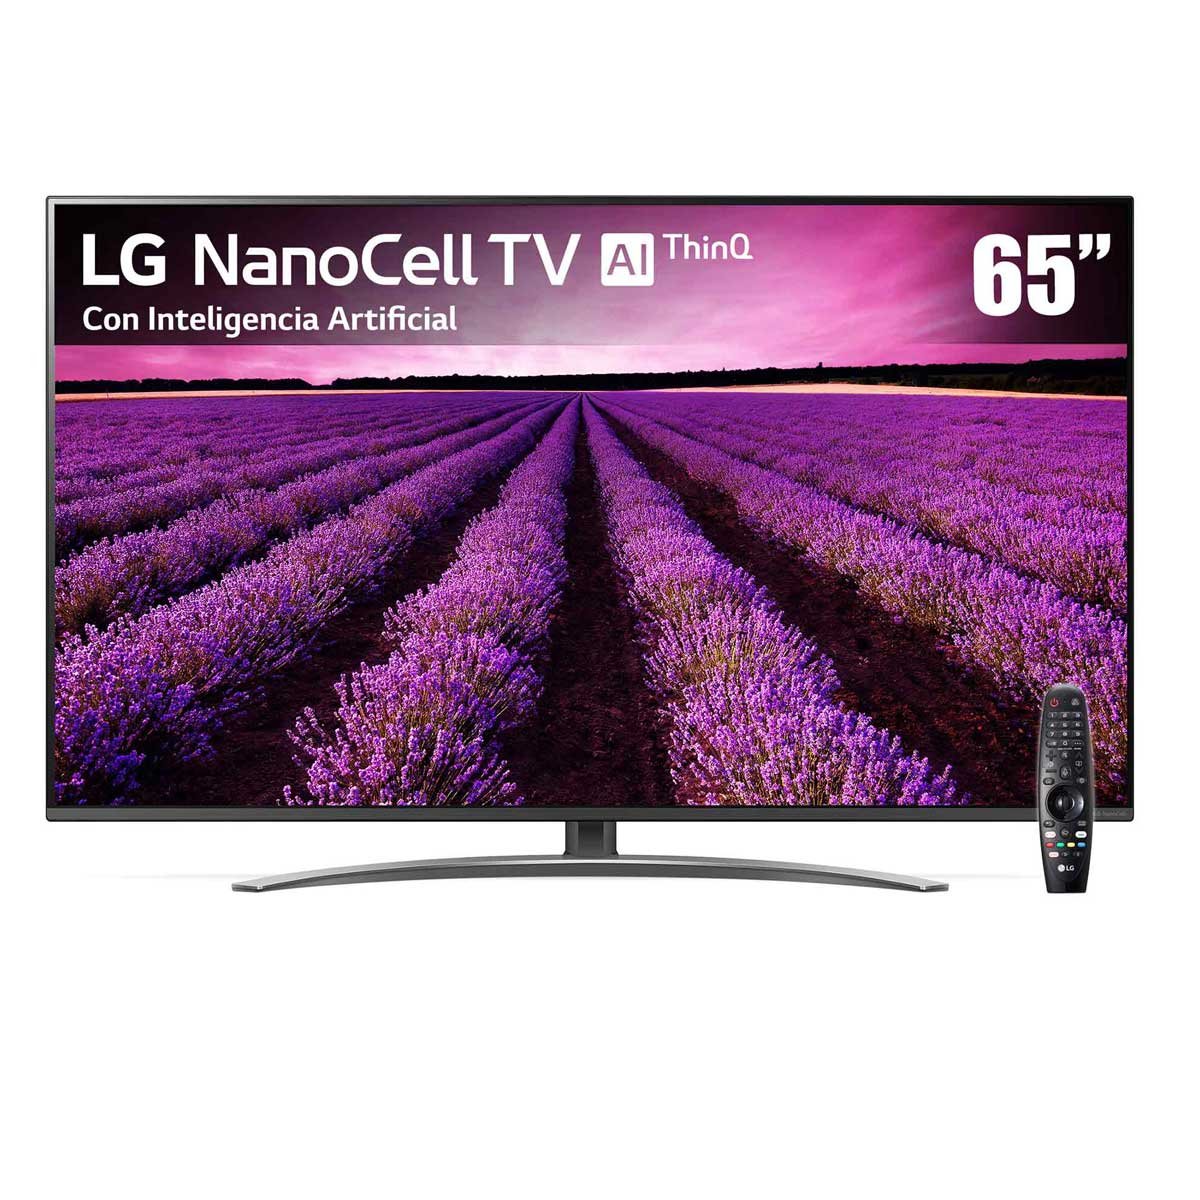 Pantalla LG 65" Nanocell Tv Ai Thinq 4K 65Sm8100Pua